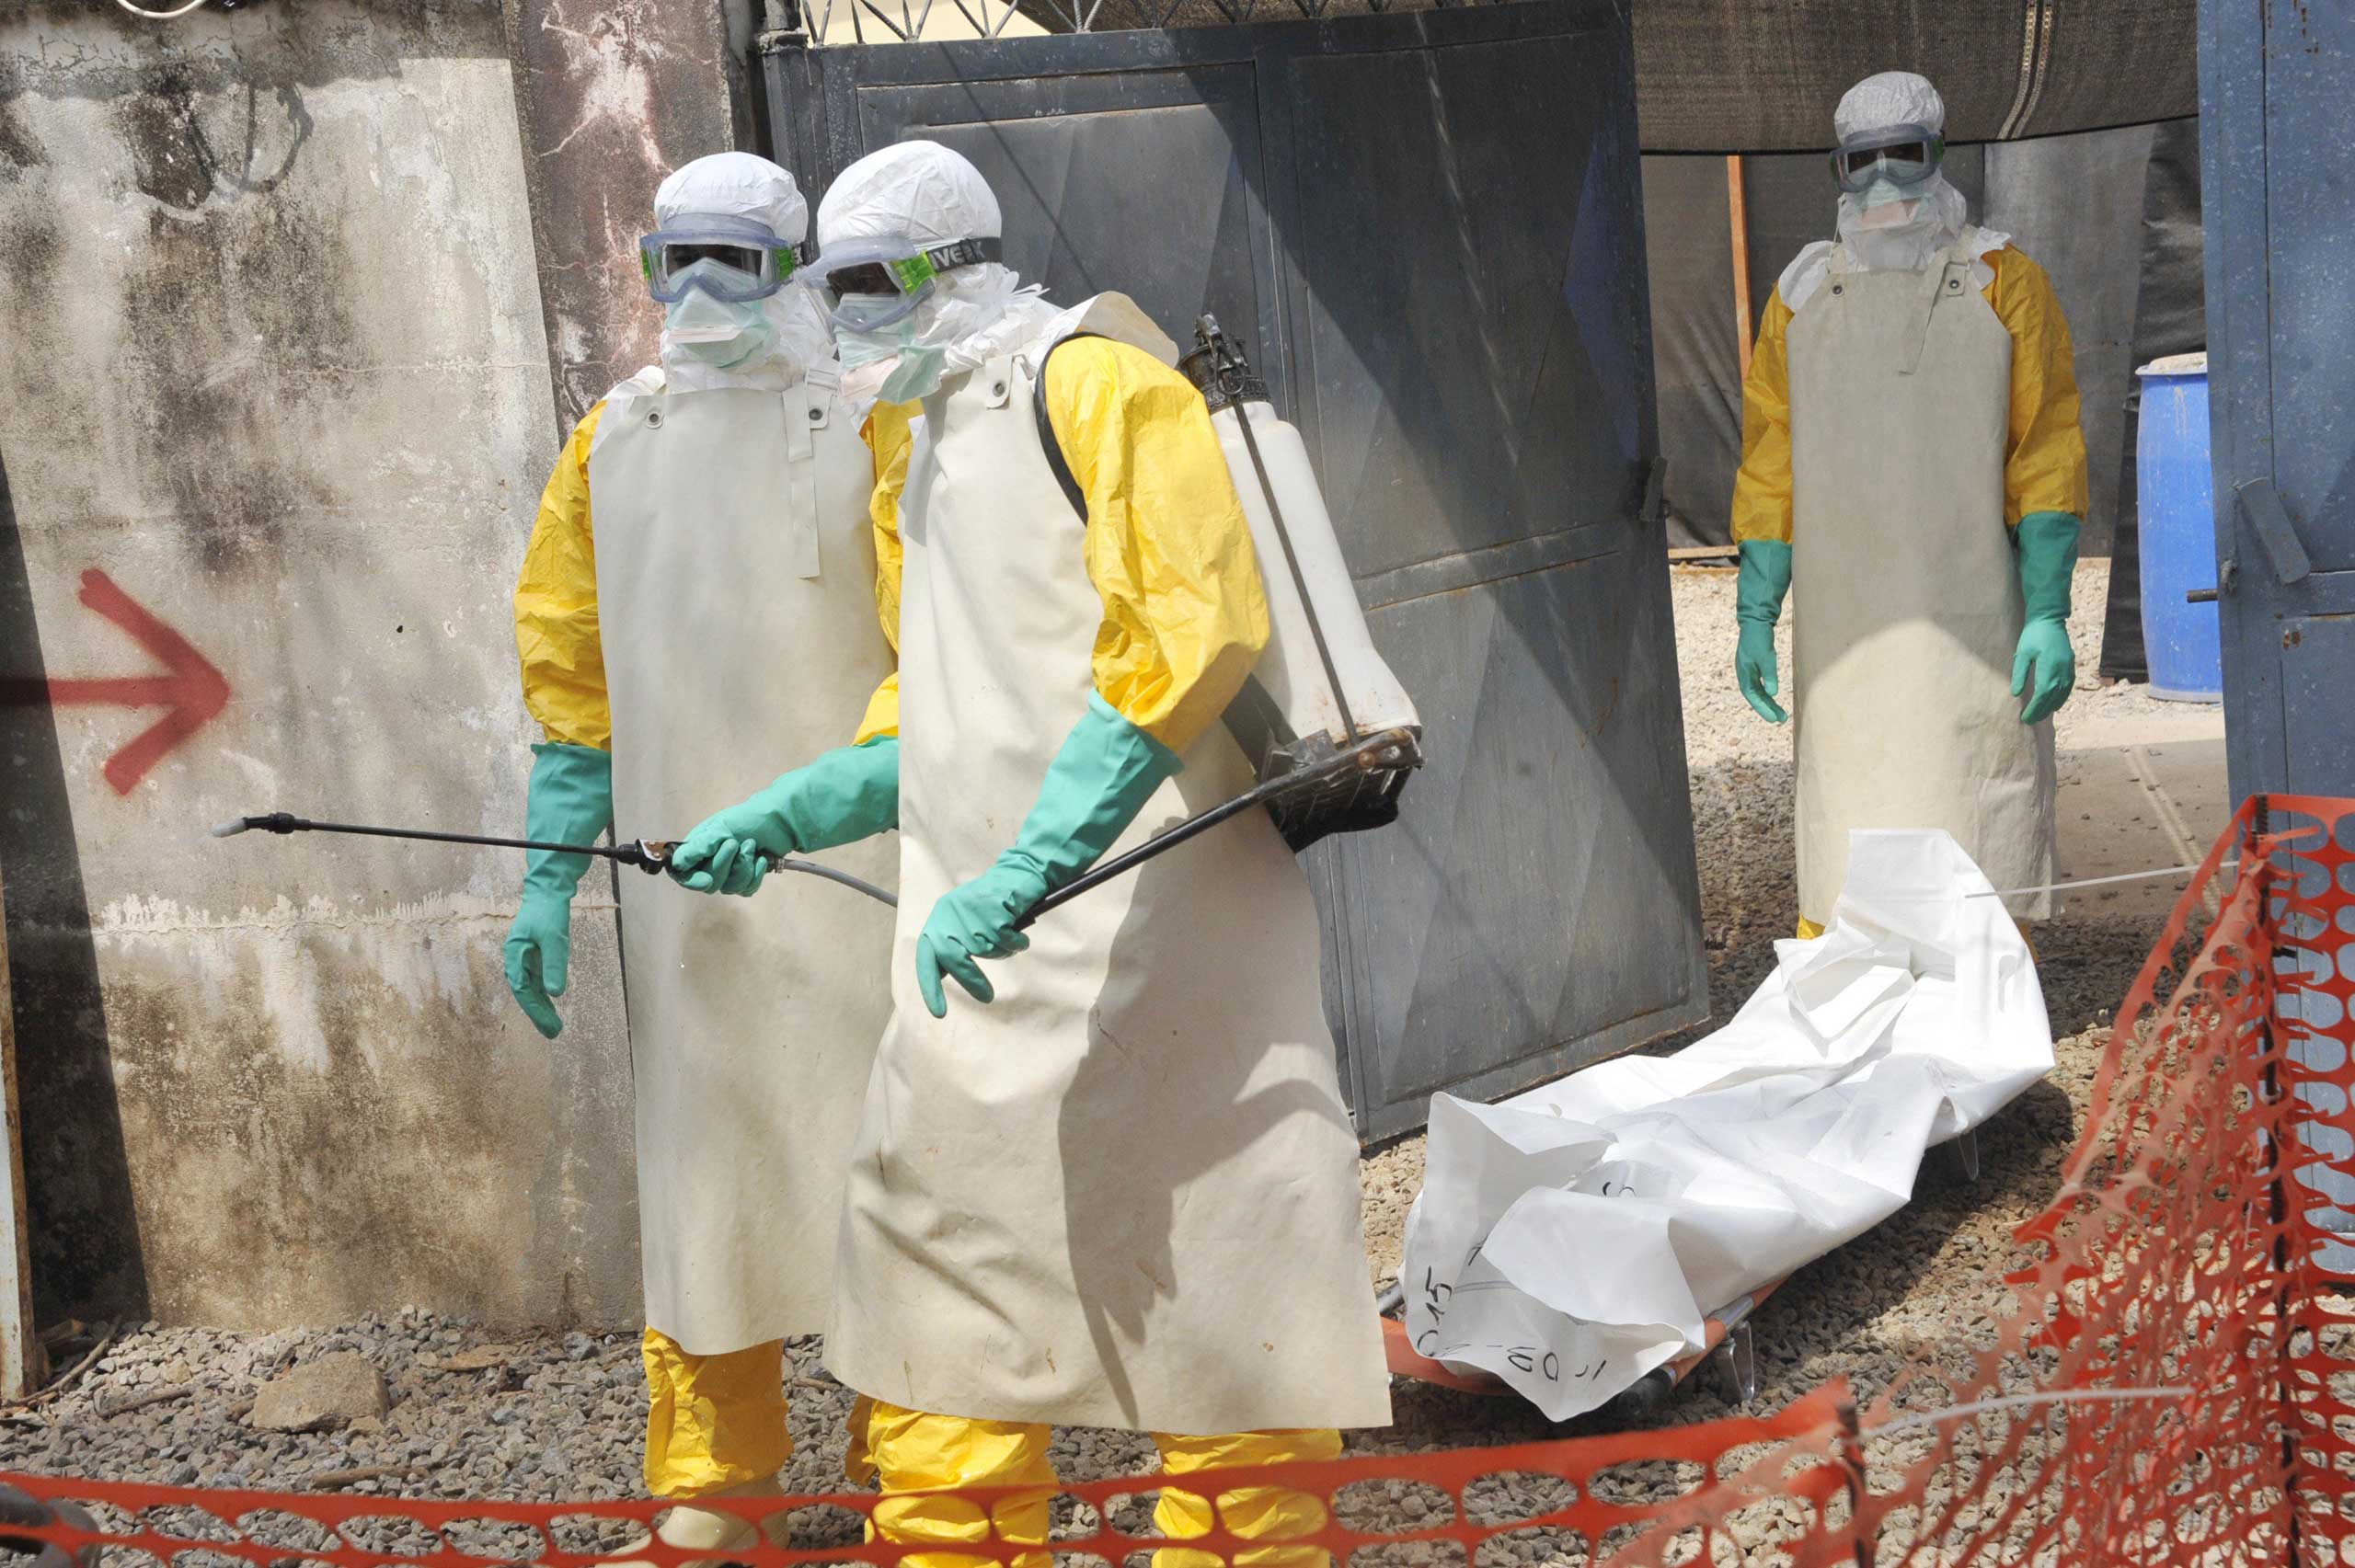 Guinea Anuncia Que Esta En “situación De Epidemia De ébola” 5 Años Después Del Fin Del último 0123